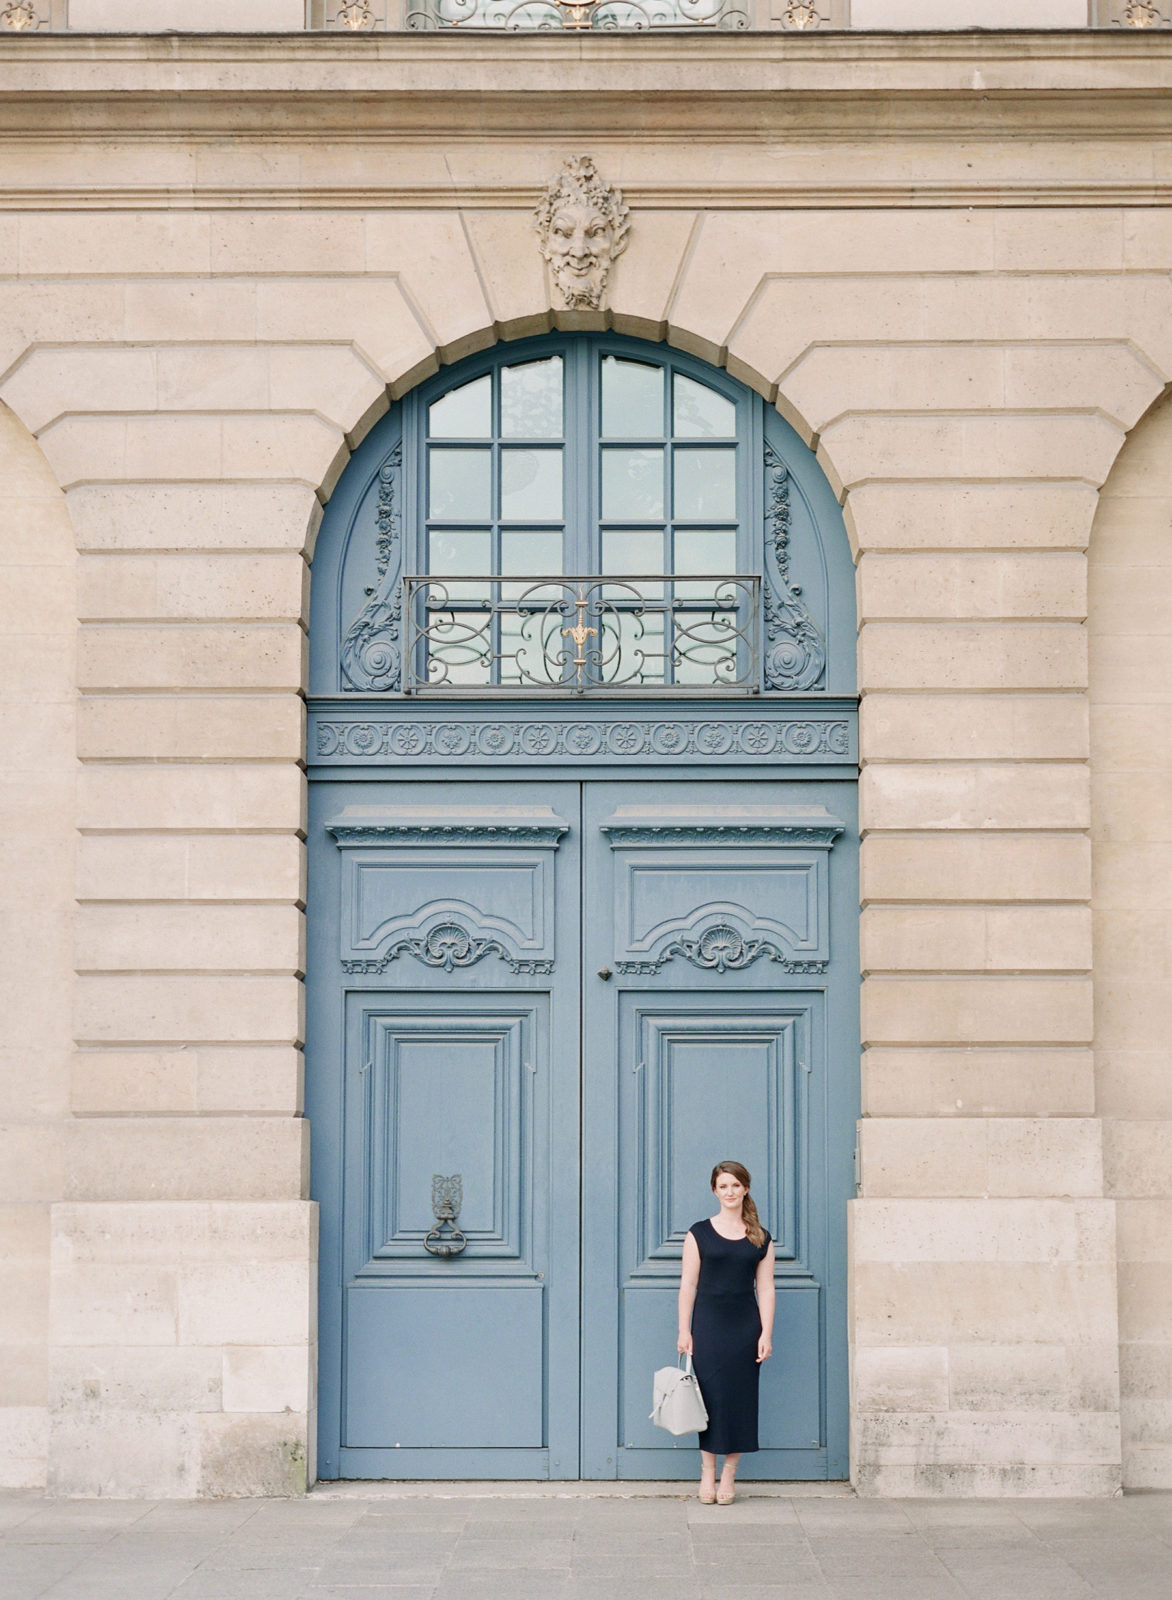 Paris branding photographer | Paris portrait photographer | Paris brand photos | Petite Abeille Design | Molly Carr Photography | Ritz Paris | Place Vendome | Paris Doors